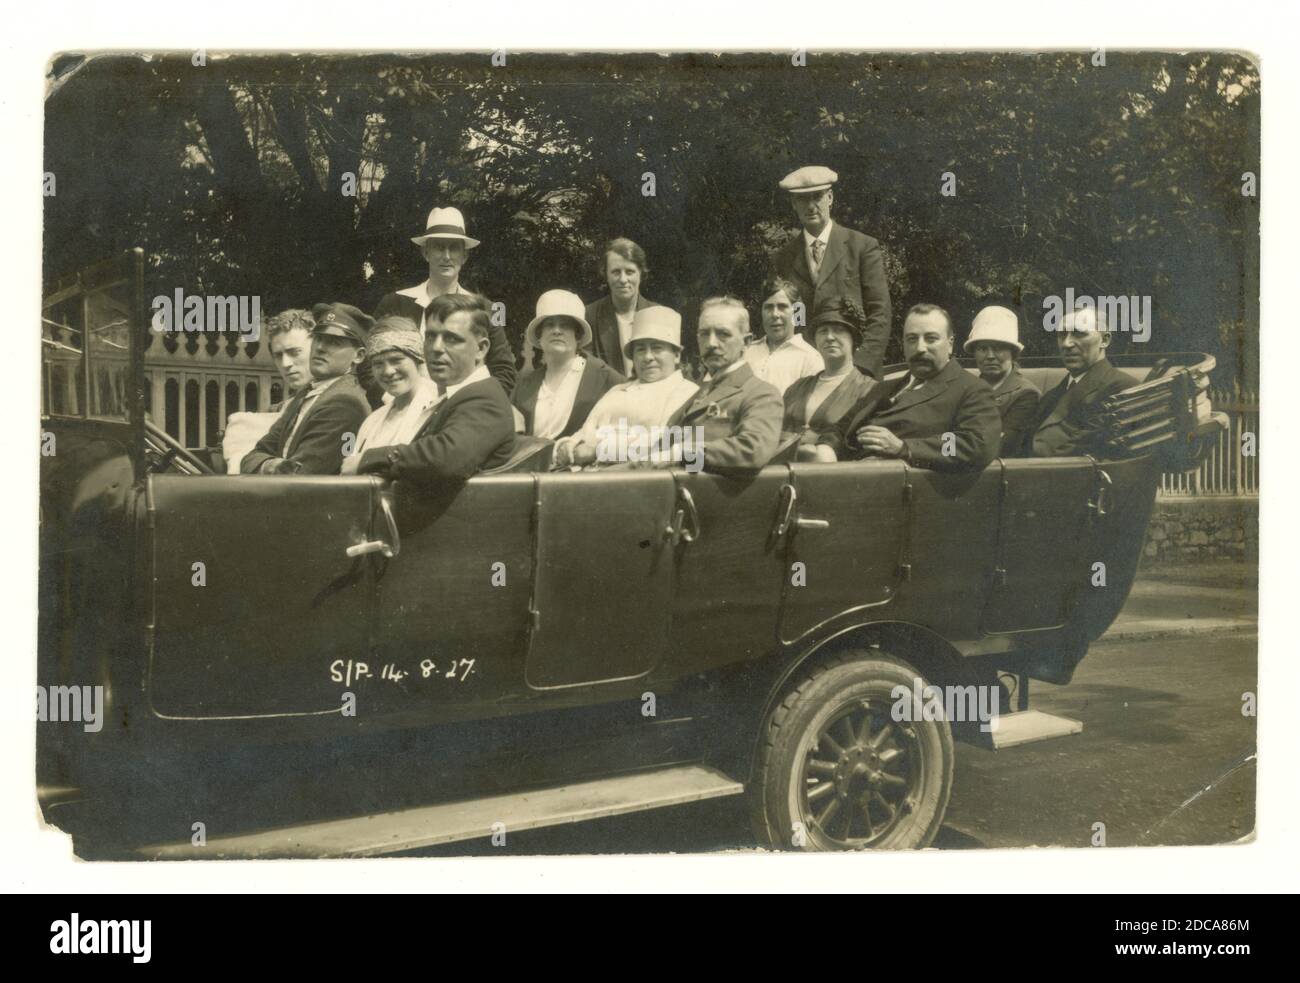 Carte postale originale des années 1920 d'une sortie charabanque, avec chauffeur portant une casquette. Les femmes portent des chapeaux de cloche à la mode à l'époque, daté du 14 août 1927 sur le devant. Albert Smith Ltd. Jersey, Royaume-Uni Banque D'Images